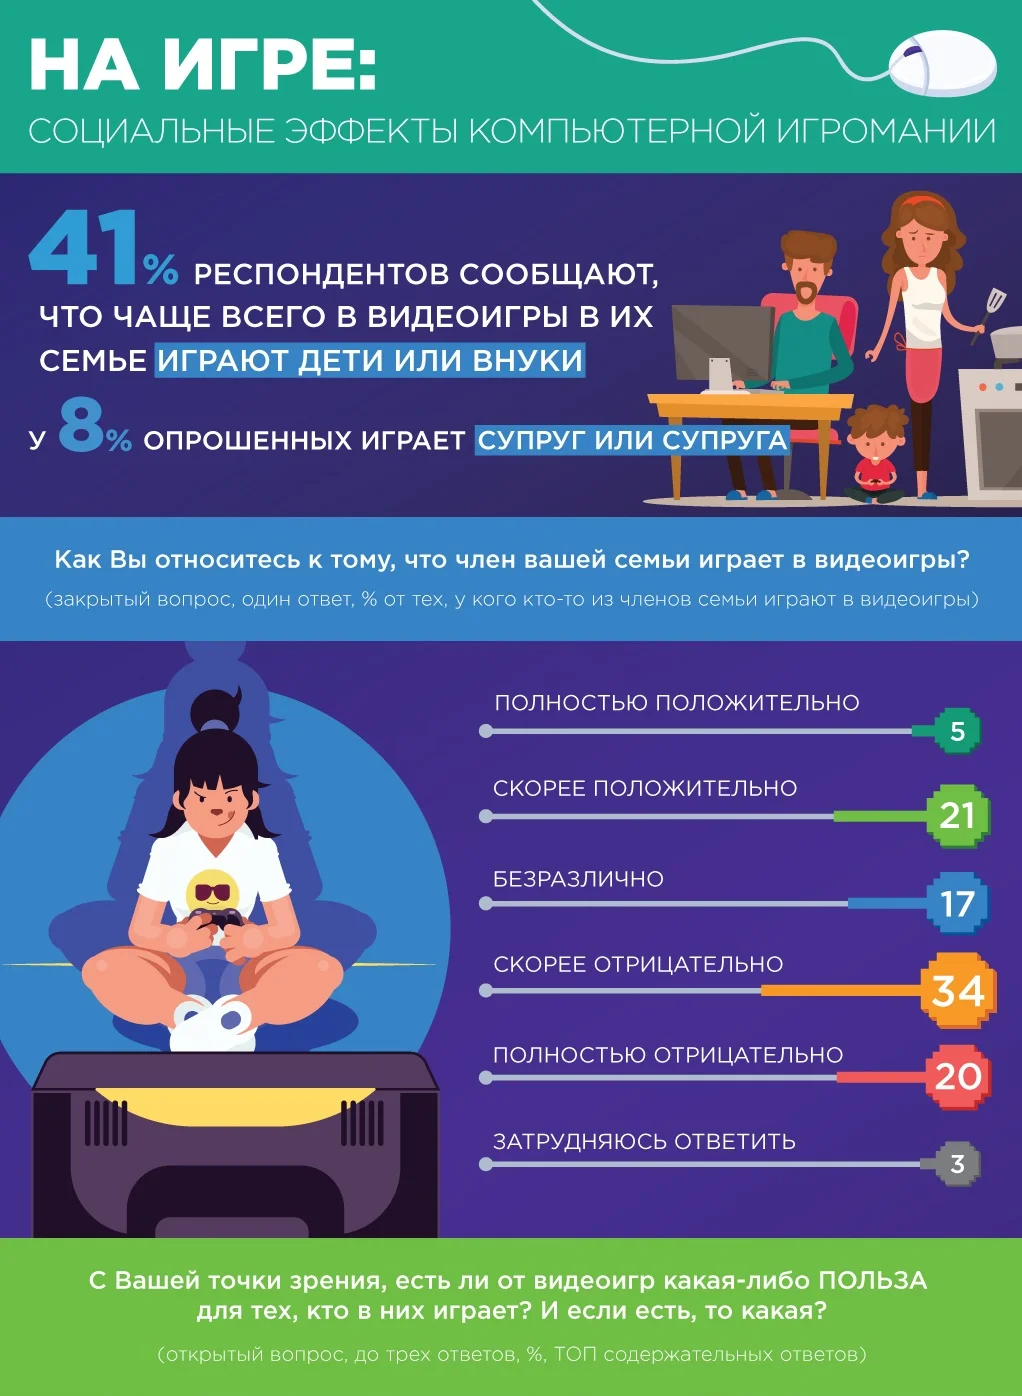 Больше половины россиян все еще негативно относятся к видеоиграм и считают, что от них лишь вред - фото 1